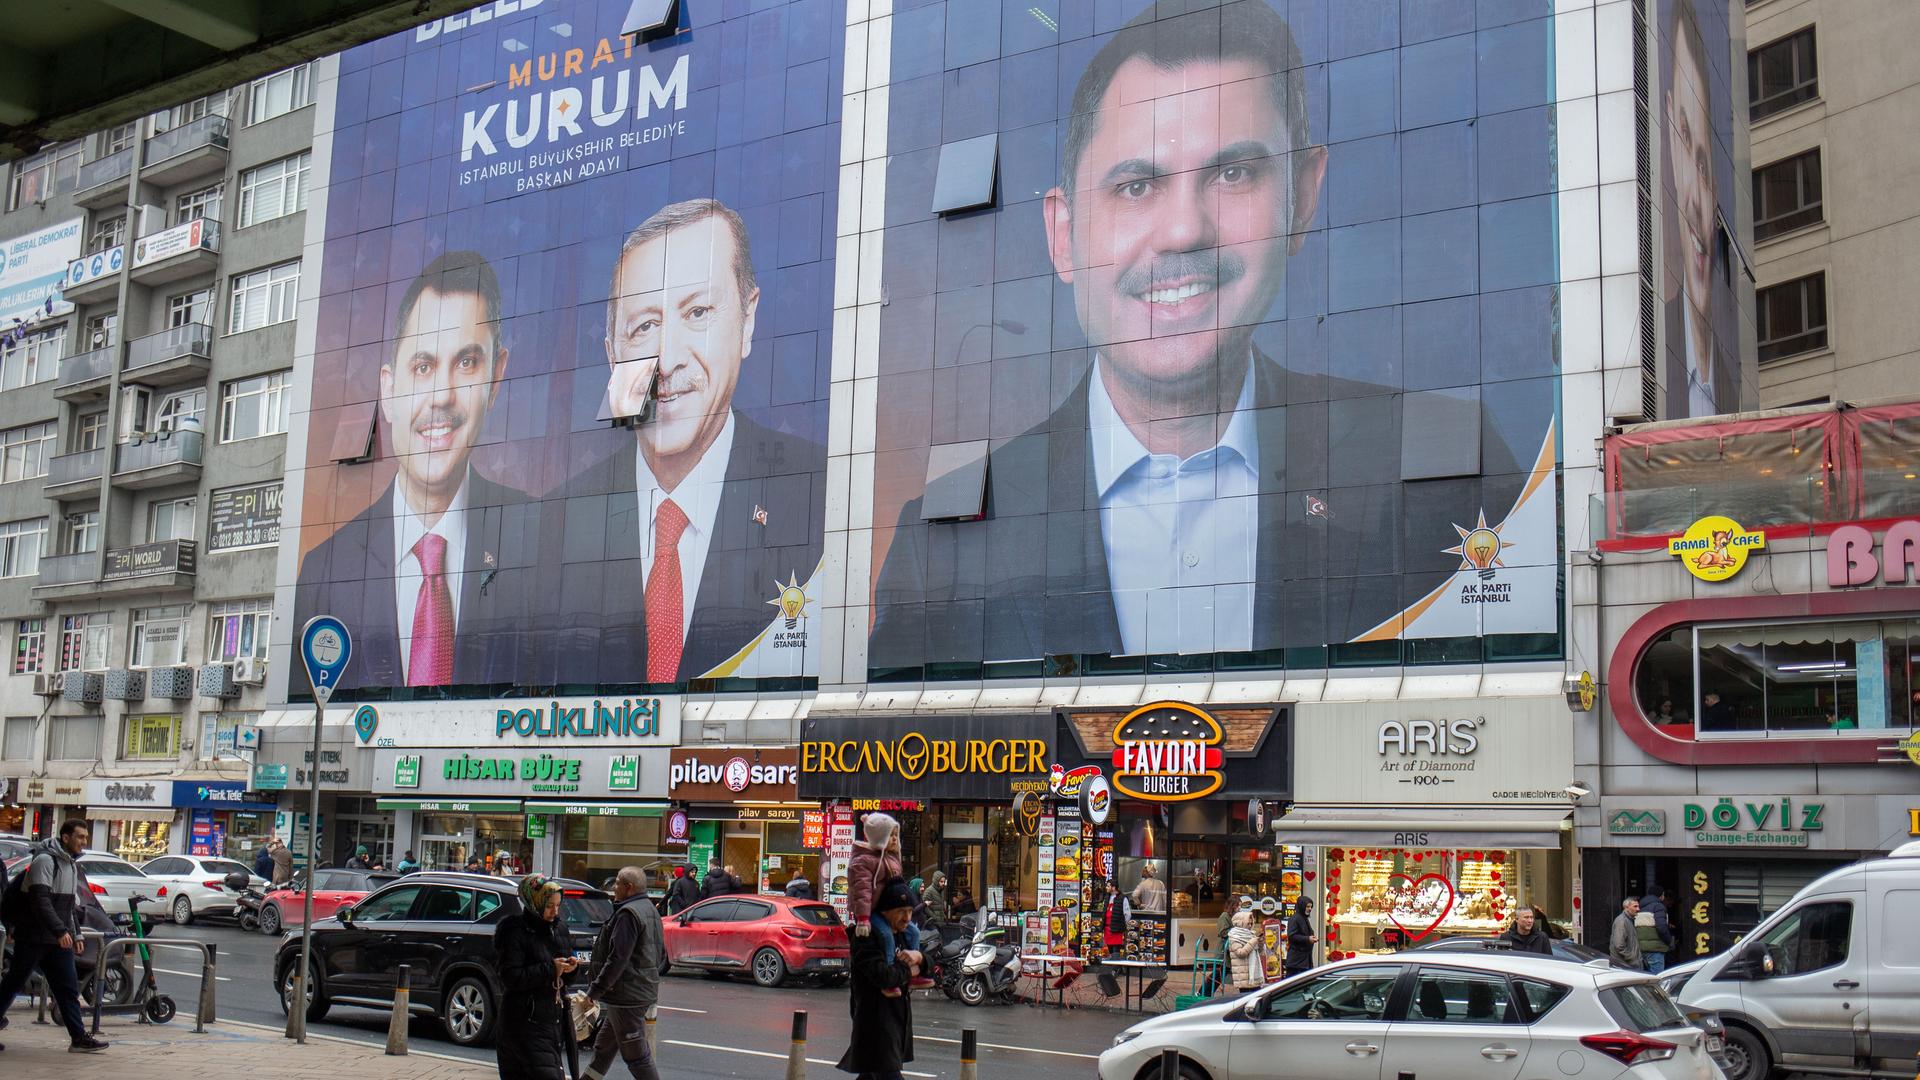 Wahlplakate an einer Hauswand in Istanbul mit dem AKP-Kandidaten Murat Kurum und Staatspräsident Erdogan